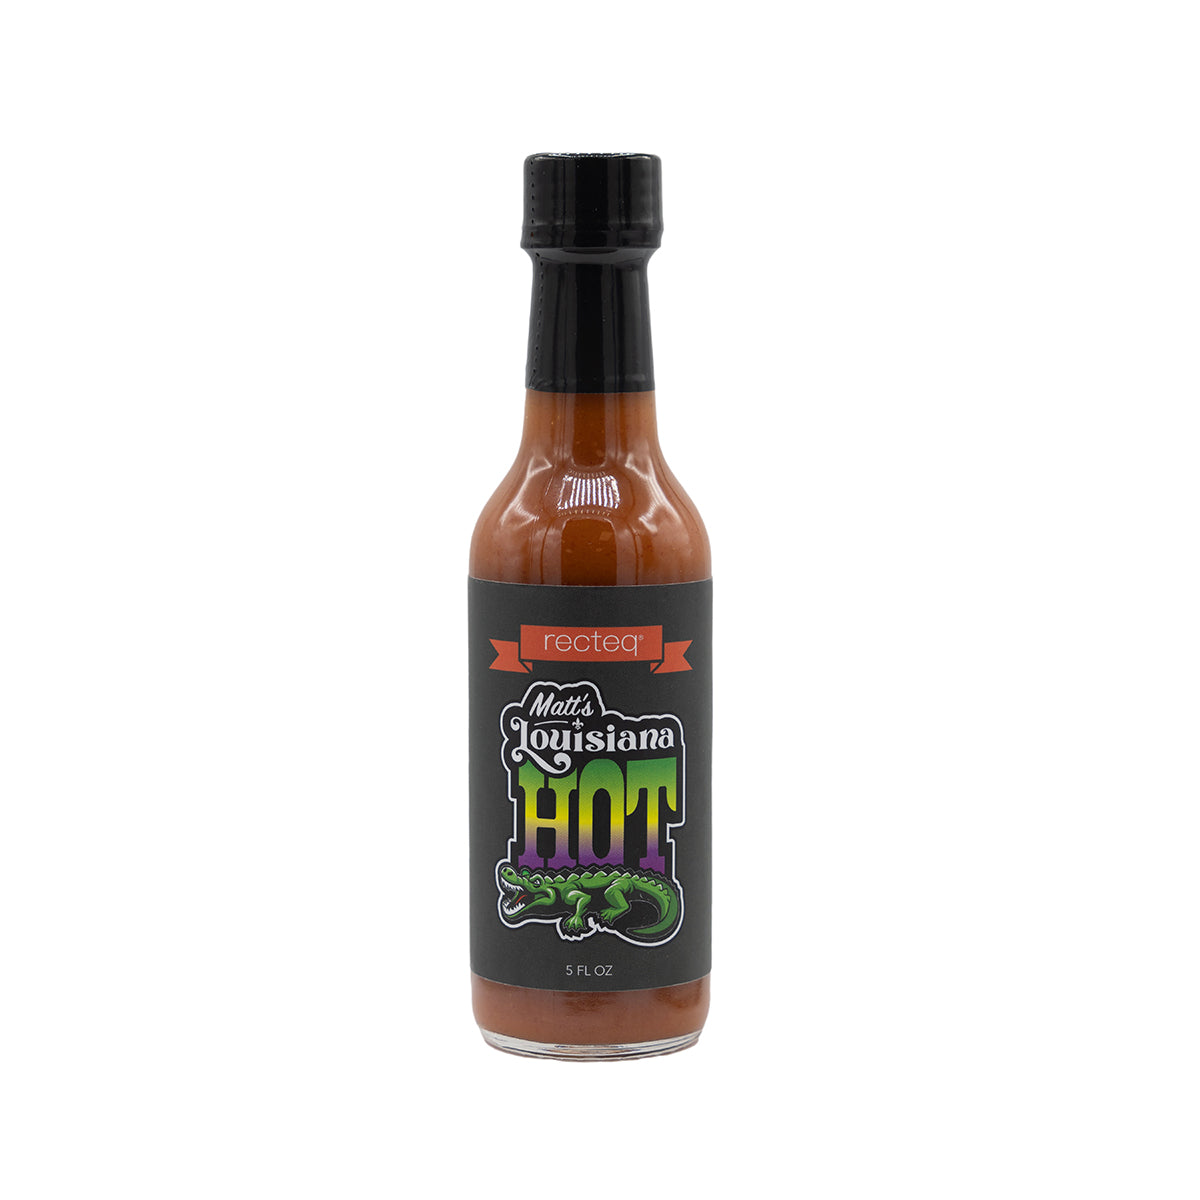 Louisiana Wing Sauce - The Original - Hot Sauce Review